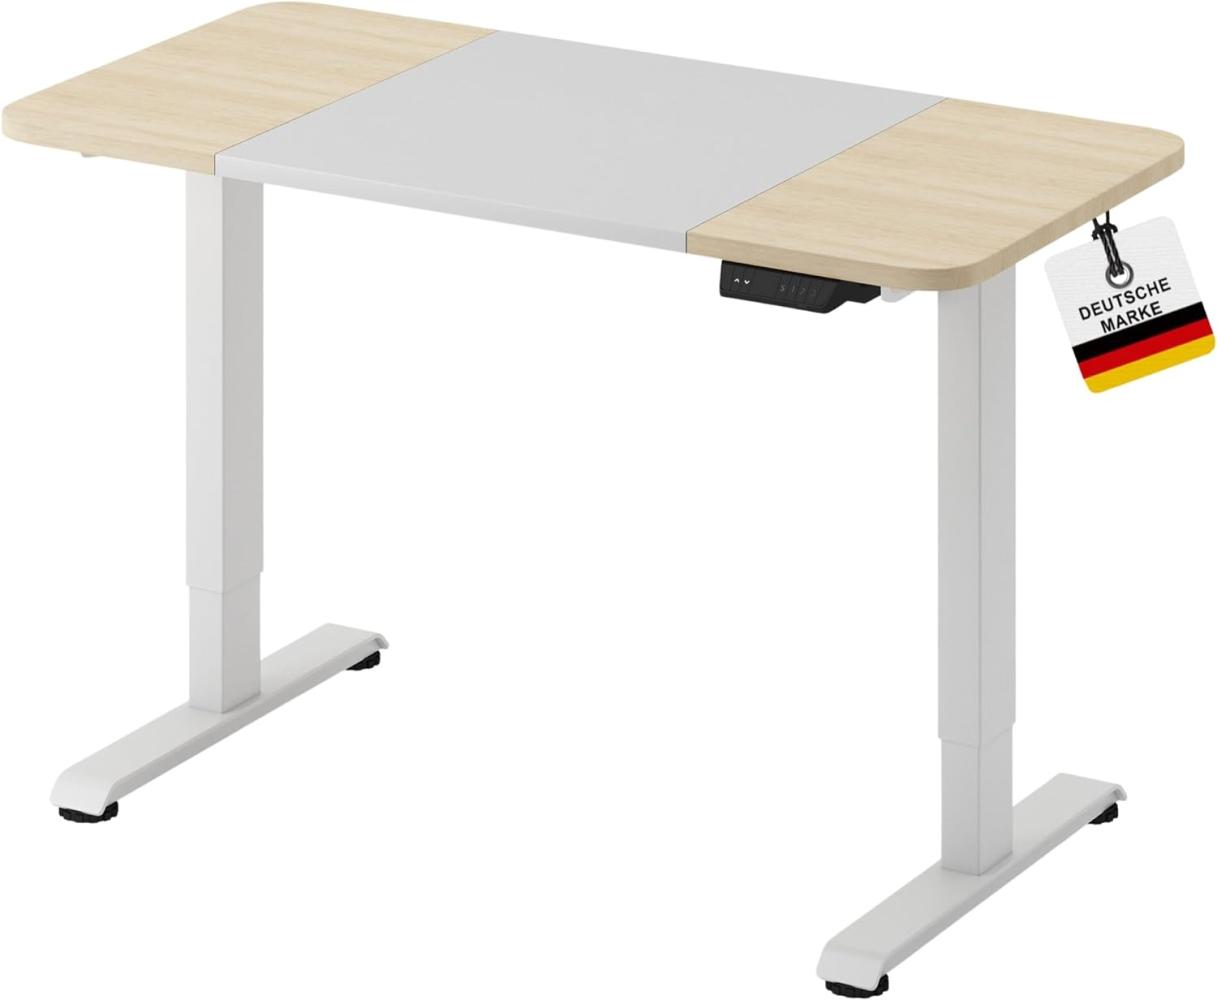 ALBATROS Höhenverstellbarer Schreibtisch LIFT 4P12, 120 x 60cm 120cm x 60xm, Weiss/Eiche Bild 1